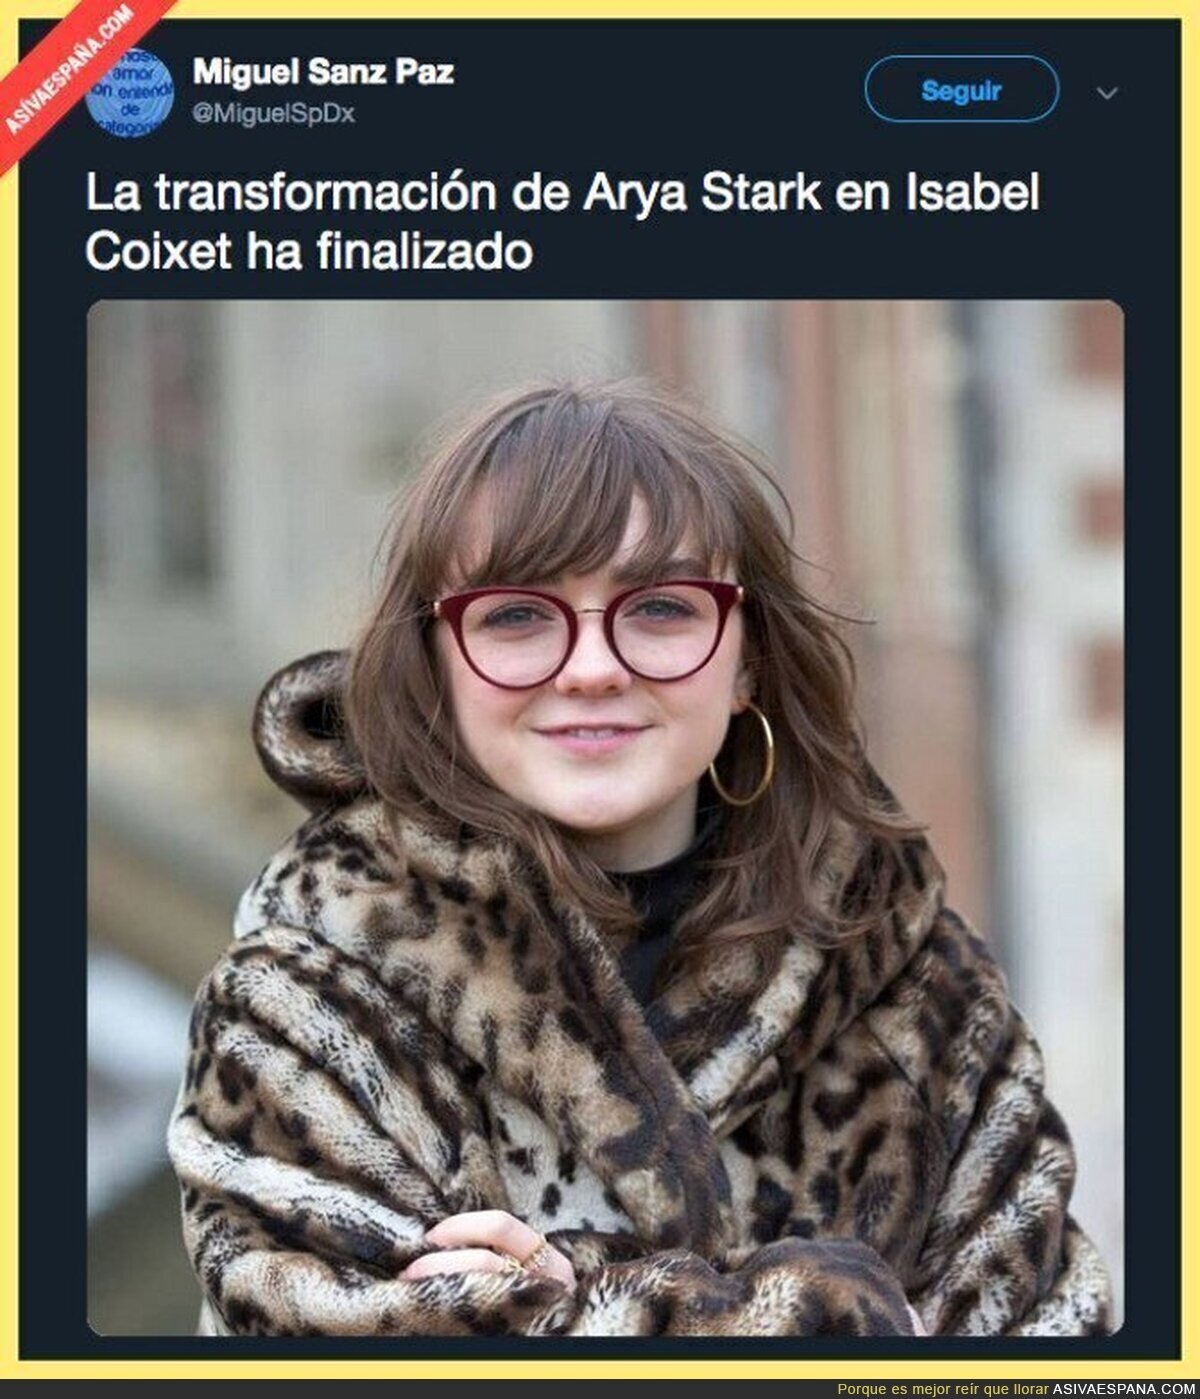 Arya Stark quiere ser como una grande en España